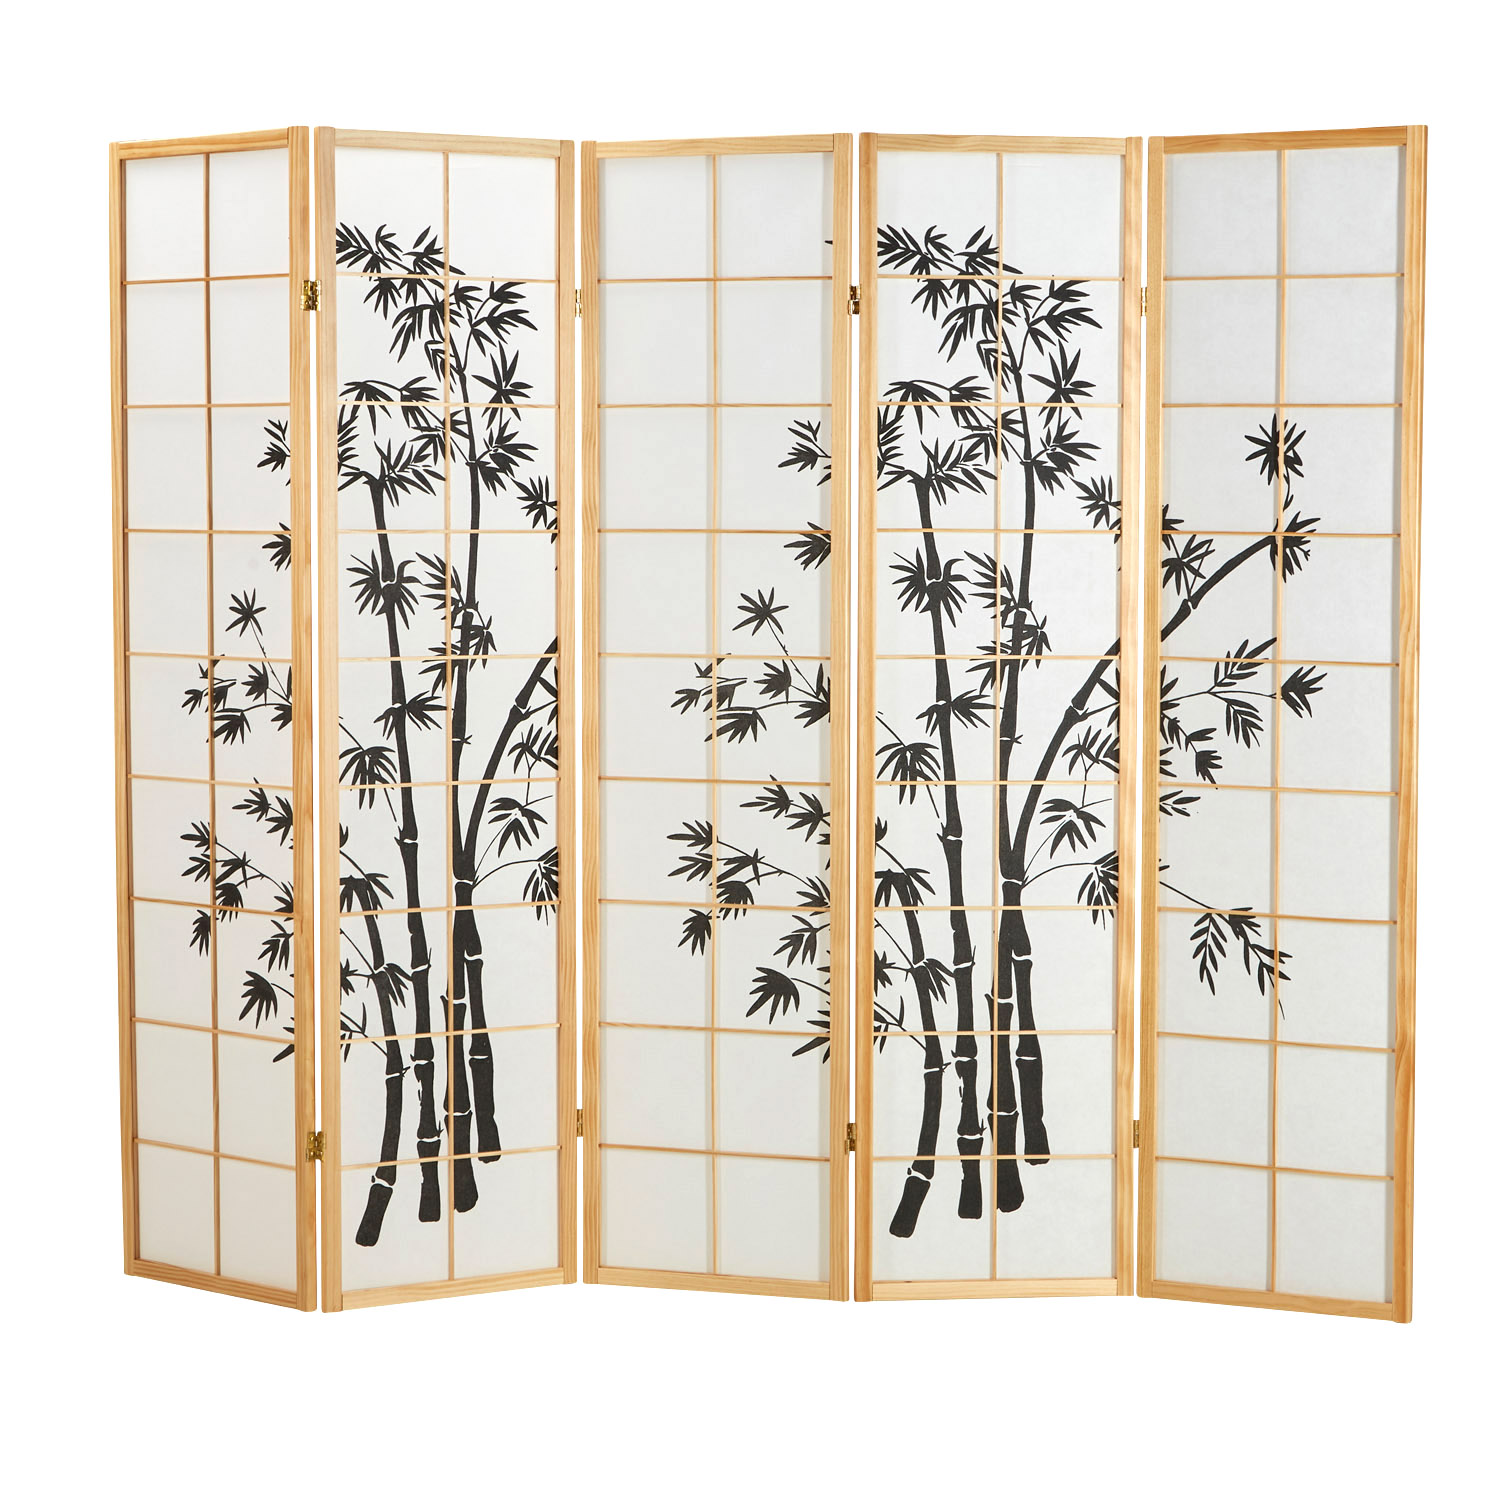 Paravent Raumteiler 3 4 5 6 teilig Holz Natur Weiß Bambusmuster Sichtschutz Trennwand